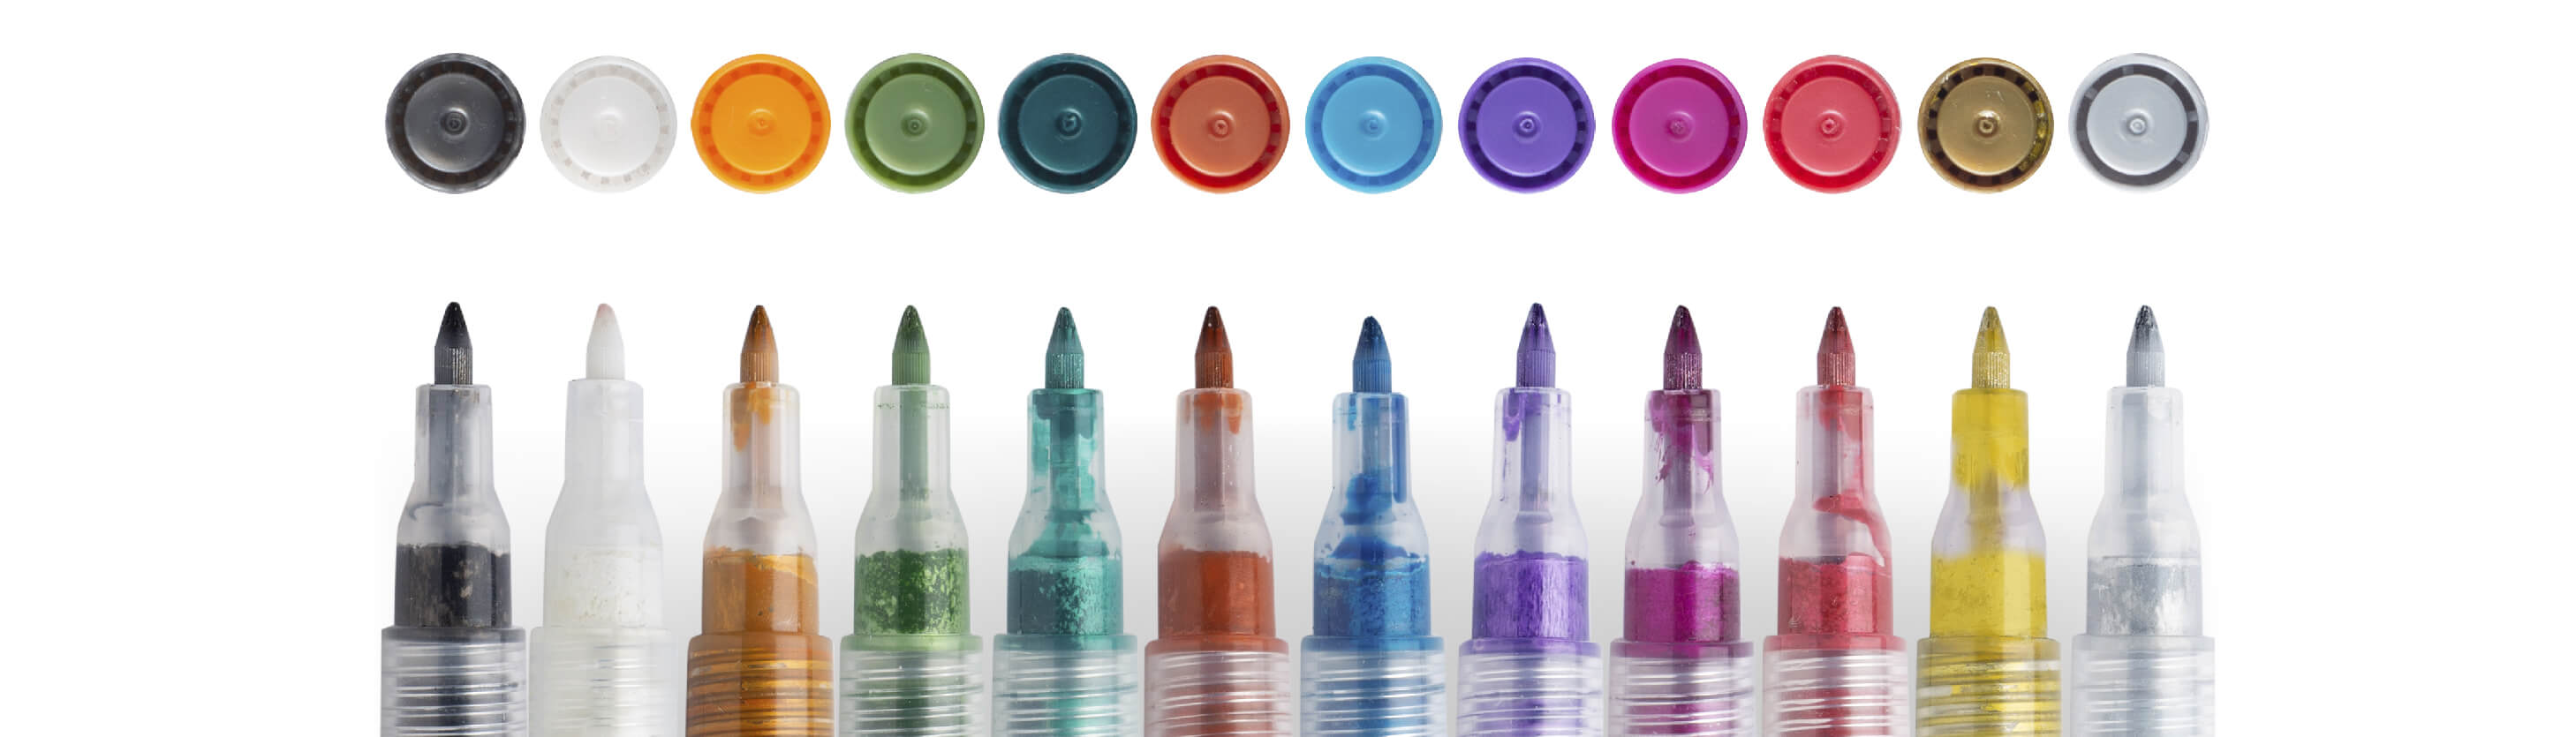 Metallic Markers: 12 Metallic Marker Pens